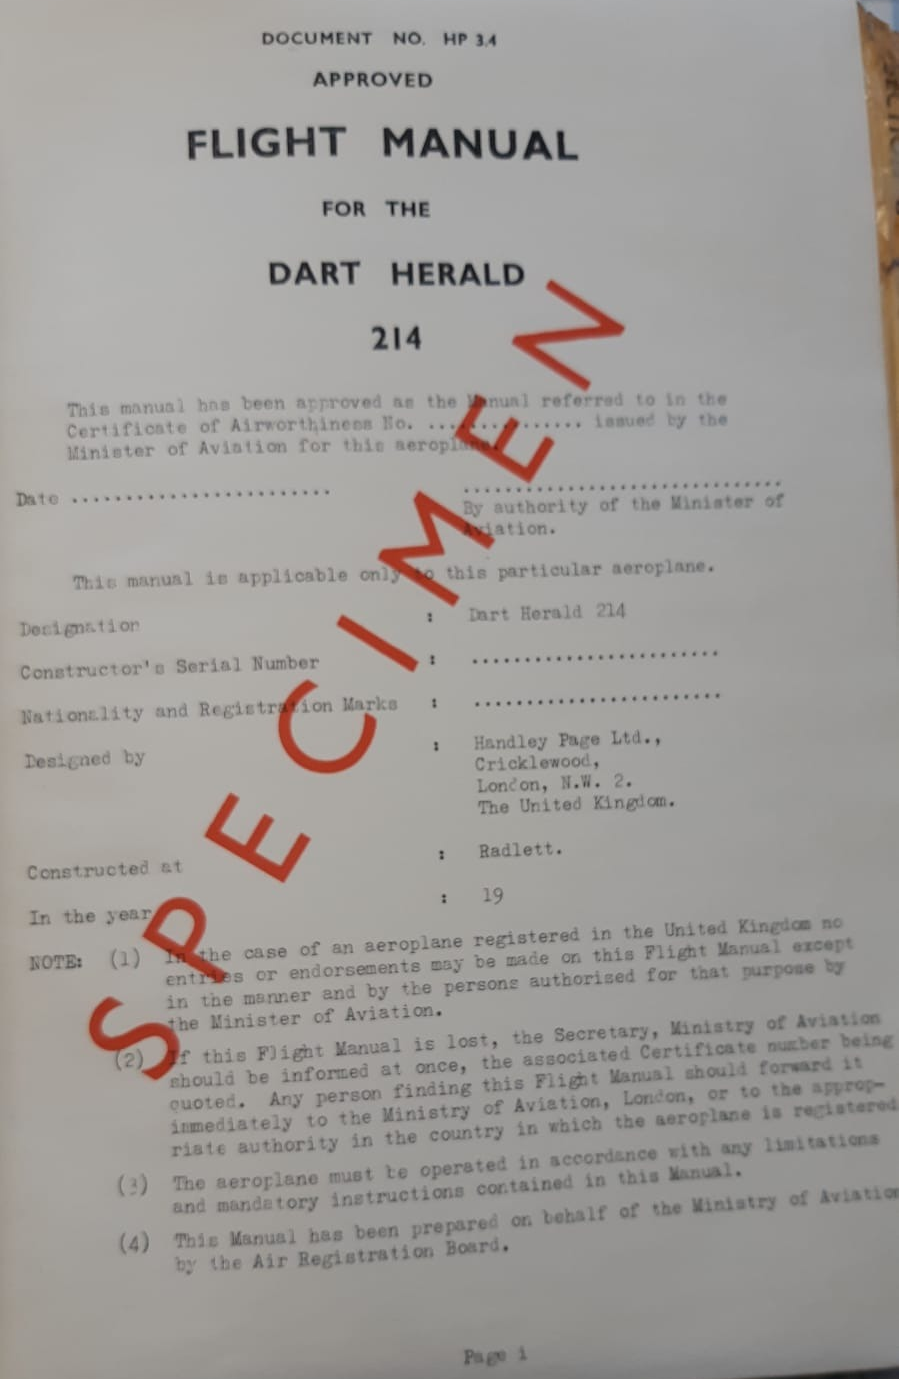 Specimen Flight Manual for a Dart Herald 214